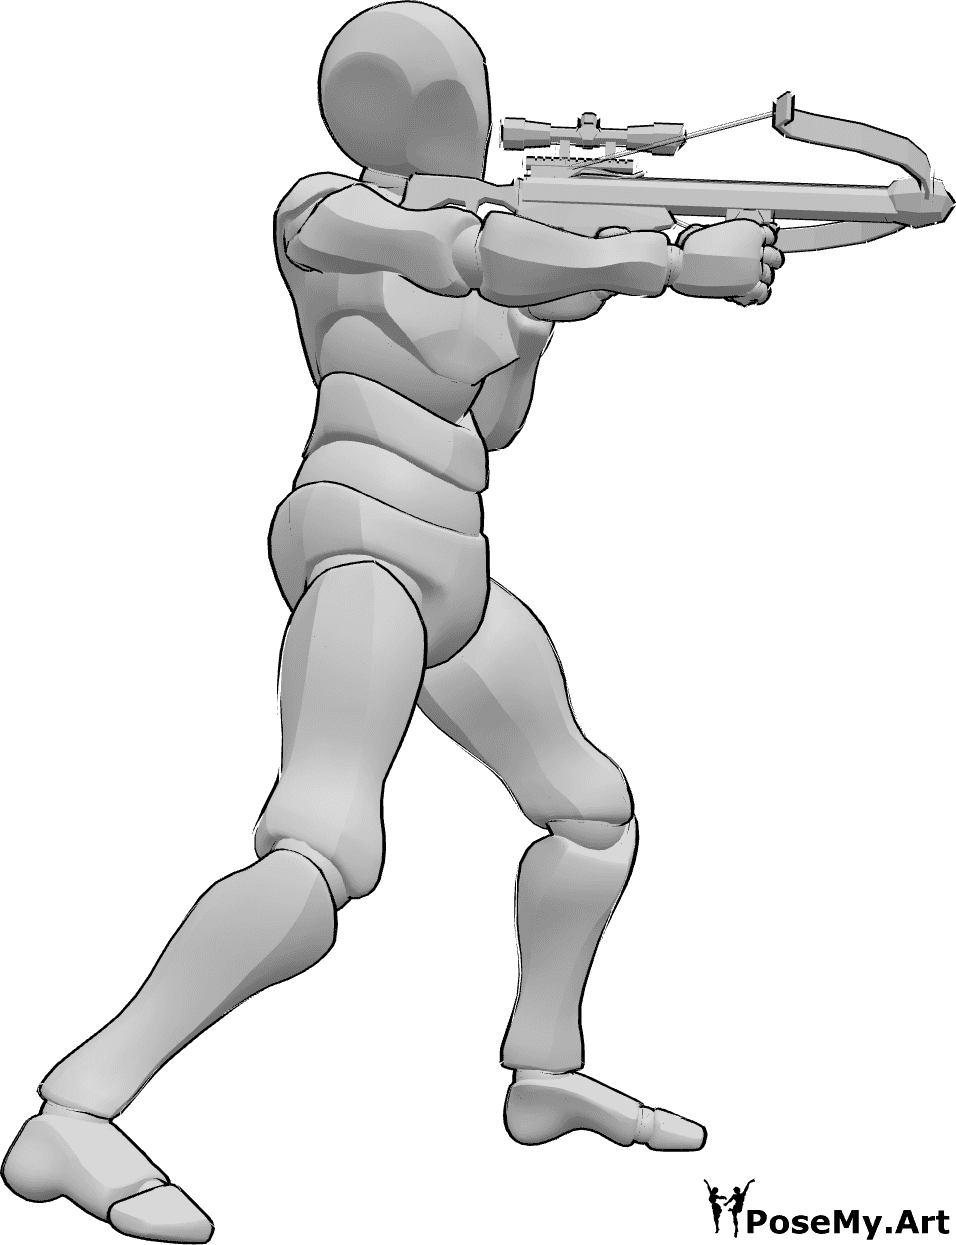 Référence des poses- Homme en train de viser à l'arbalète - L'homme est debout, tient l'arbalète à deux mains et vise.